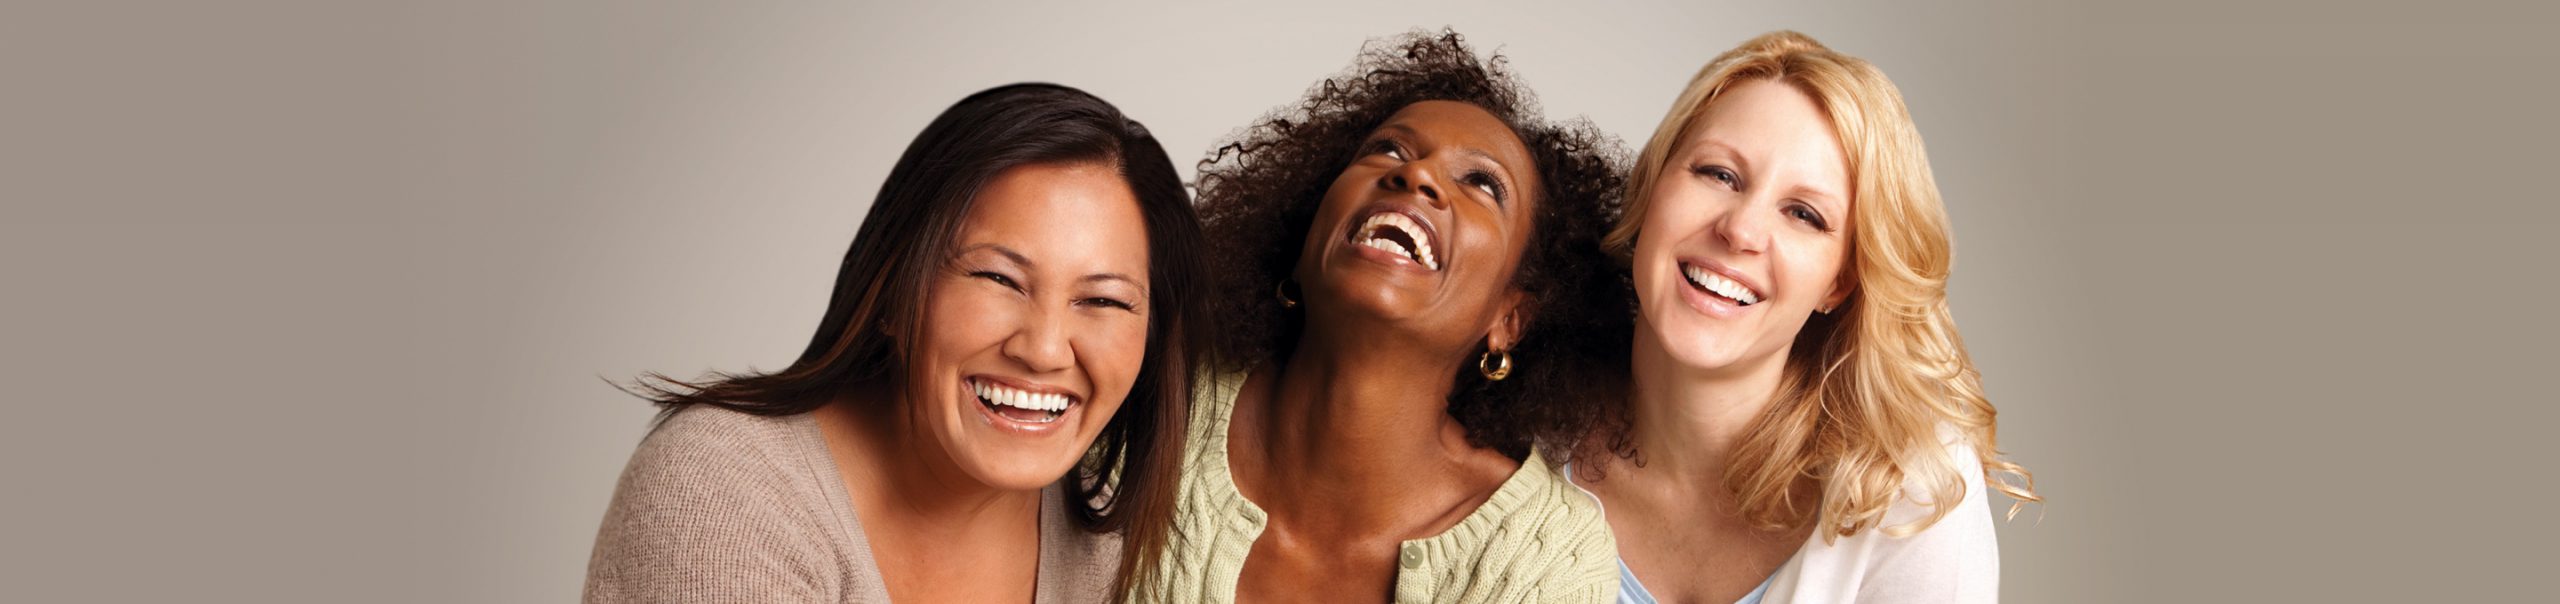 women smiling dermatology